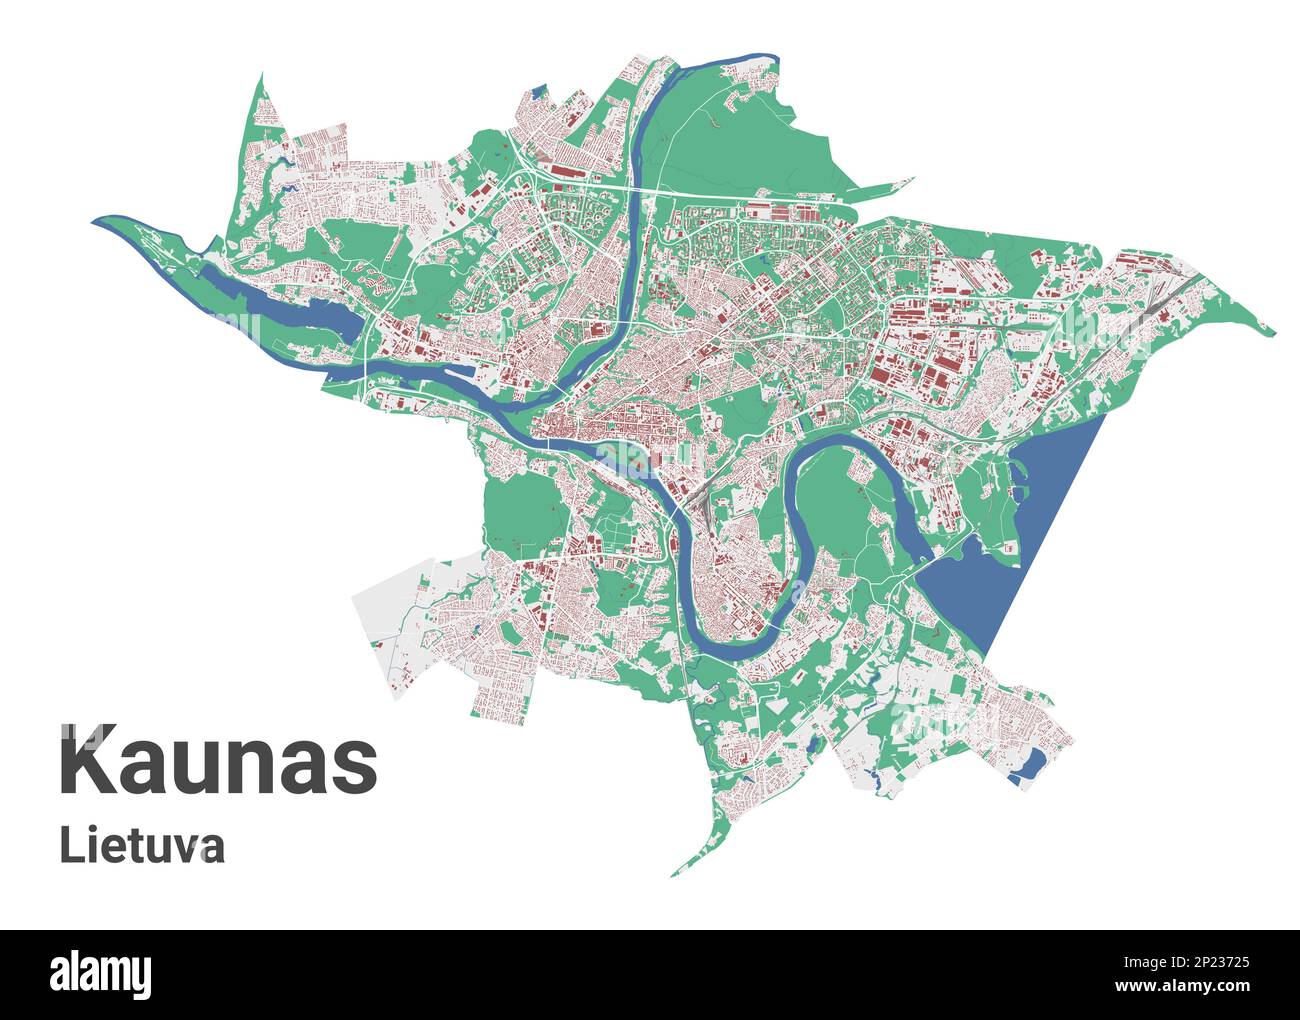 Stadtplan von Kaunas, detaillierte Stadtkarte der Verwaltungsgrenzen. Fluss Neman, Straßen und Eisenbahn, Gebäude und Parks. Vektordarstellung. Stock Vektor